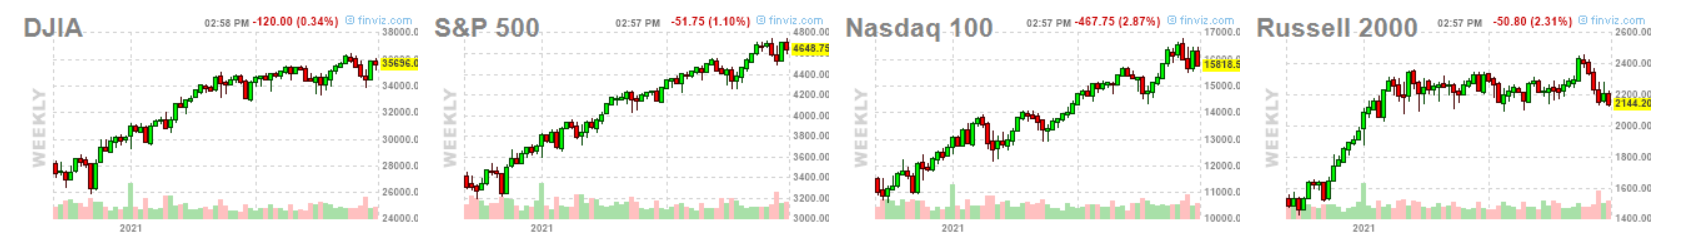 индексы США, NASDAQ, S&P 500DOW JONES, RUSSELL 2000, 